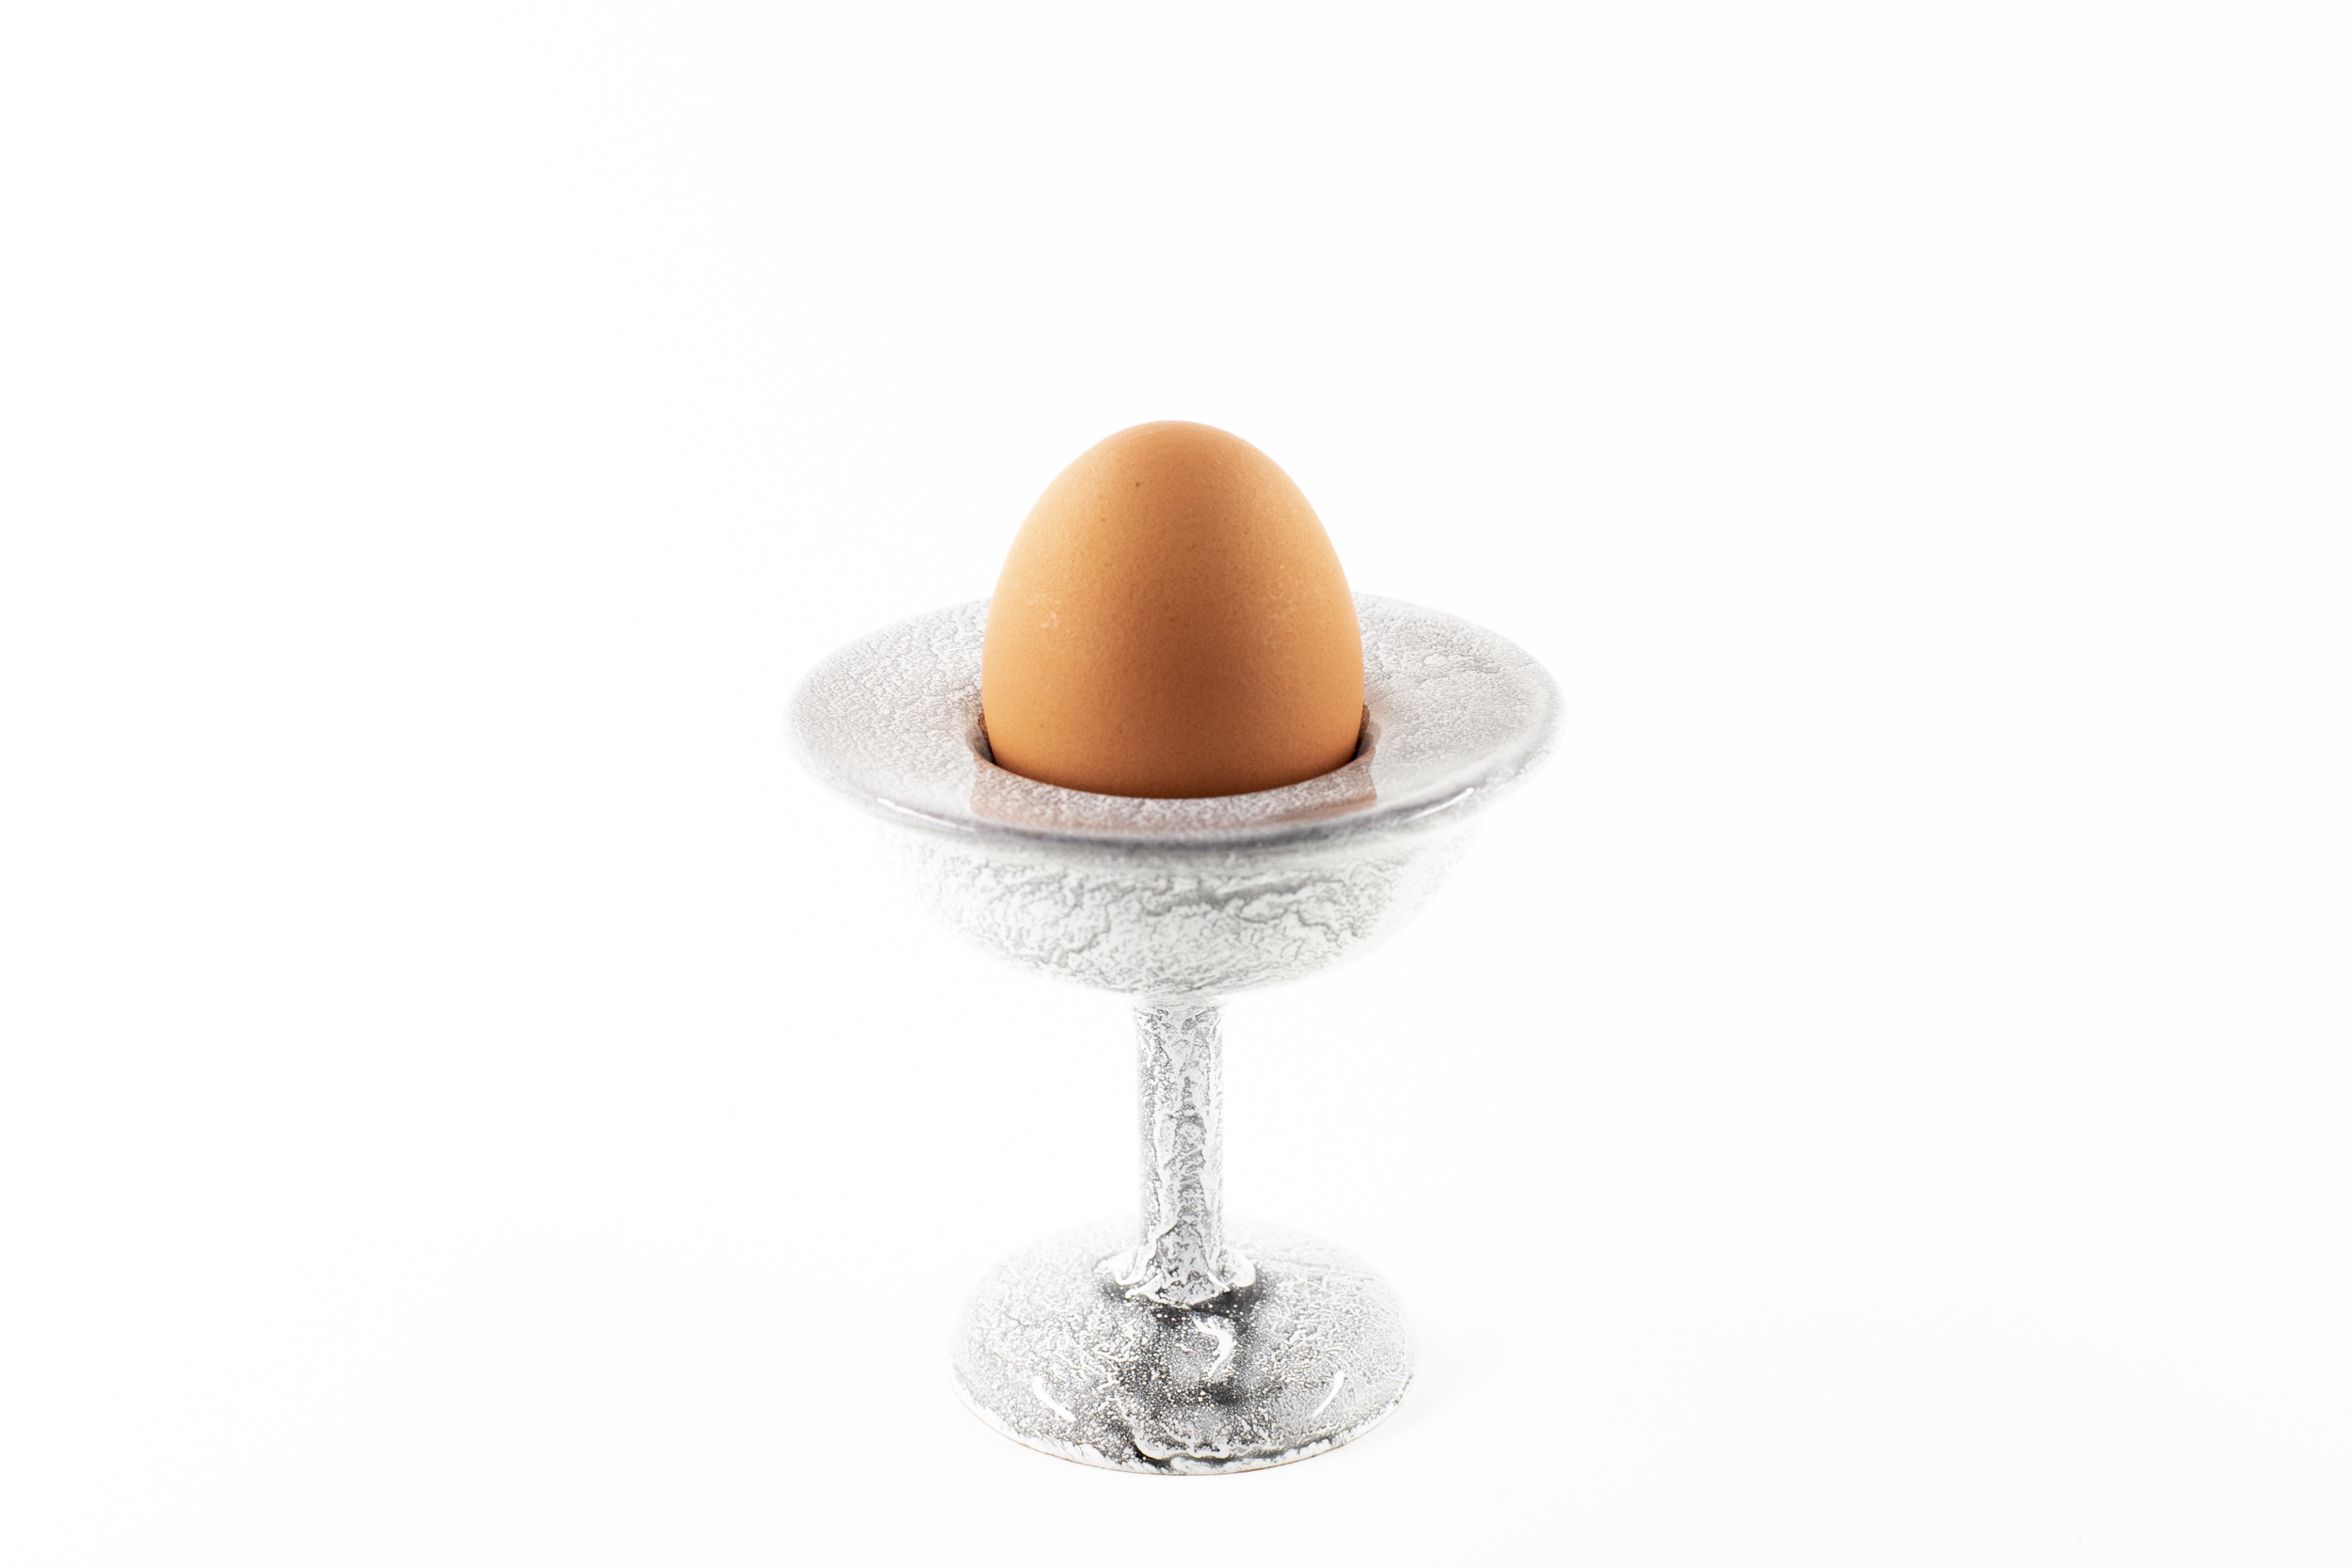 Ceramic designer modern egg cup